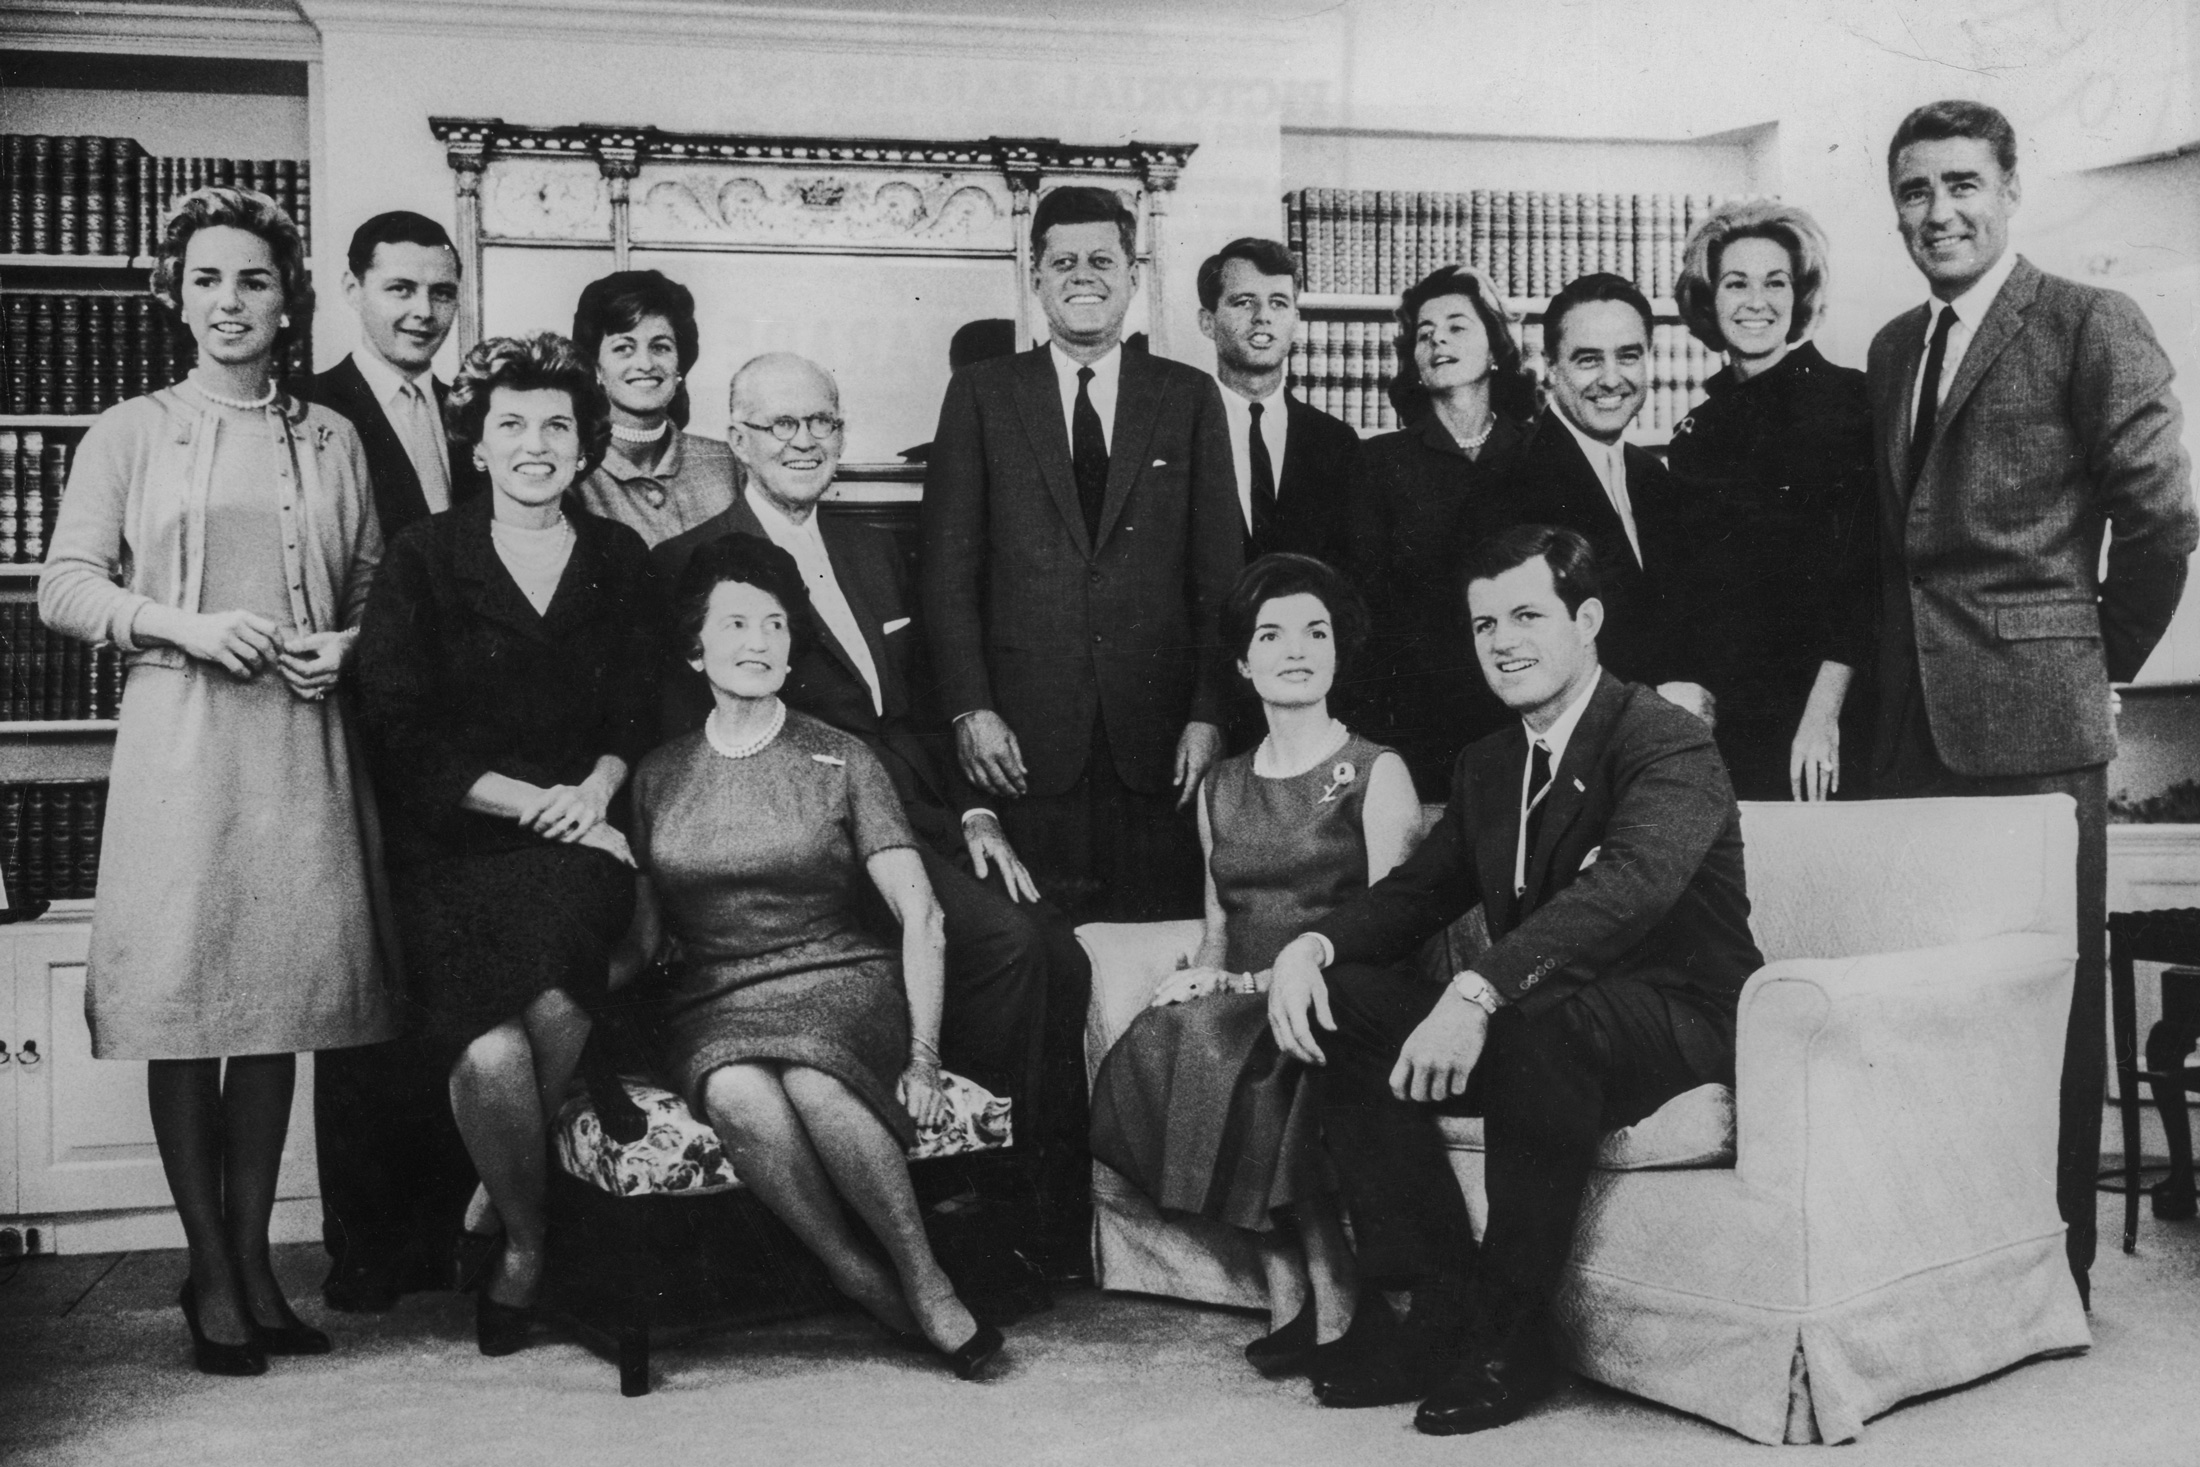 Tổng thống John F. Kennedy (ở giữa) cùng gia đình mình chụp ảnh sau khi ông giành chiến thắng trong cuộc bầu cử tổng thống, tại Cảng Hyannis, Massachusett, vào ngày 09/11/1960. Mối liên hệ của gia đình Mellon với gia đình Kennedy đã được thiết lập từ những năm 1960. (Ảnh: Trung tâm Lưu trữ Hulton/Getty Images)